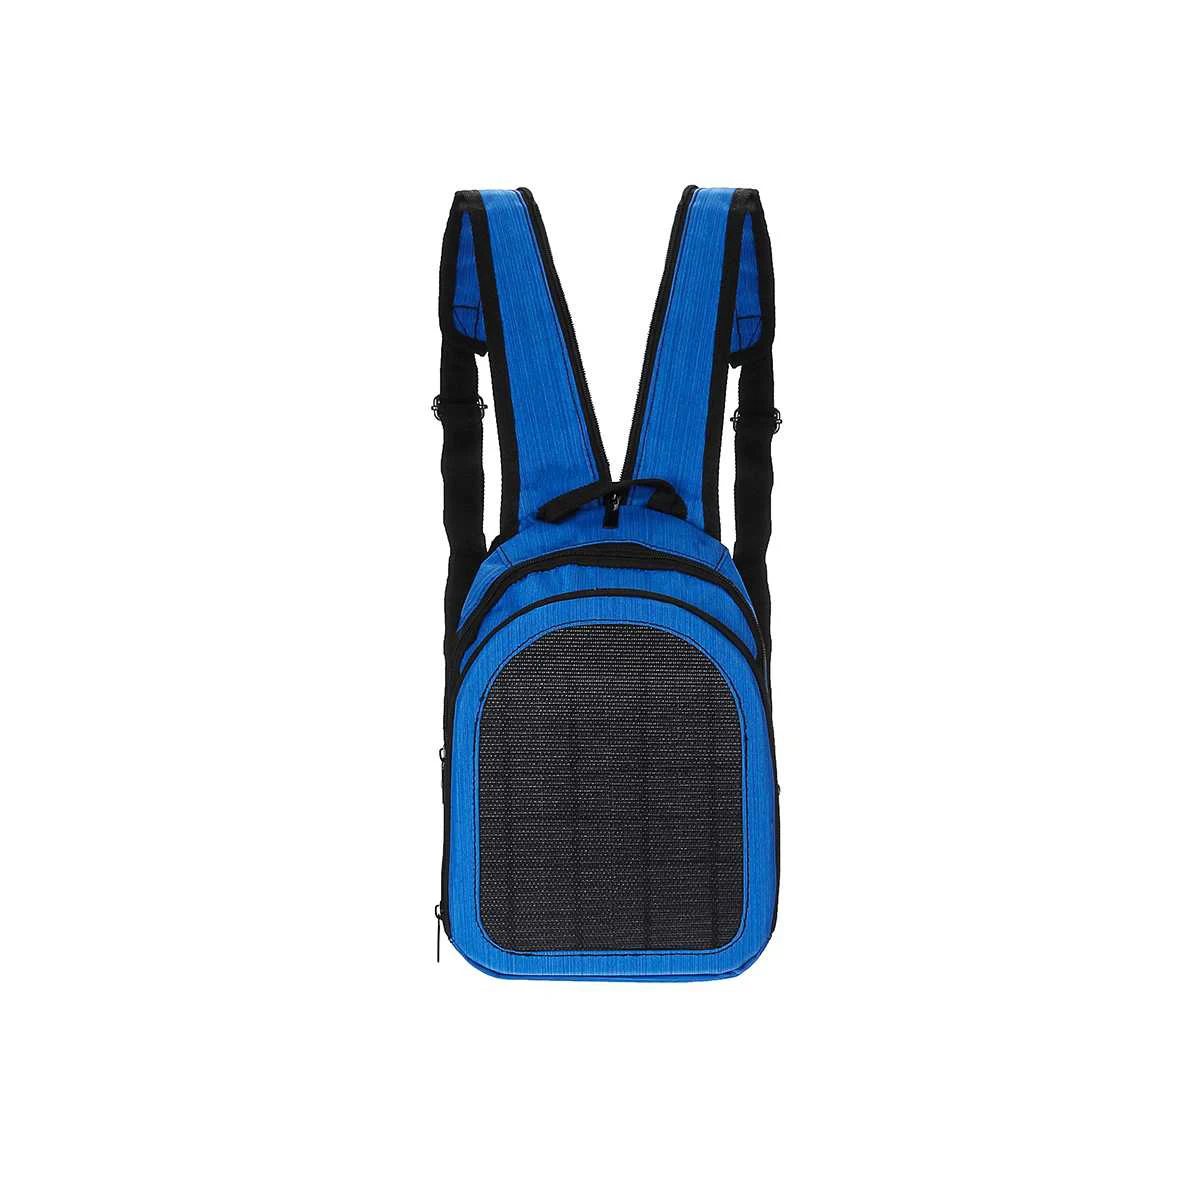 2L рюкзак с солнечной панелью, USB, 5 Вт, 5 В, Портативная сумка через плечо, для мобильных телефонов, зарядка с солнечной панелью, сумка для путешествий, сумки с солнечным зарядным устройством - Цвет: Темно-синий